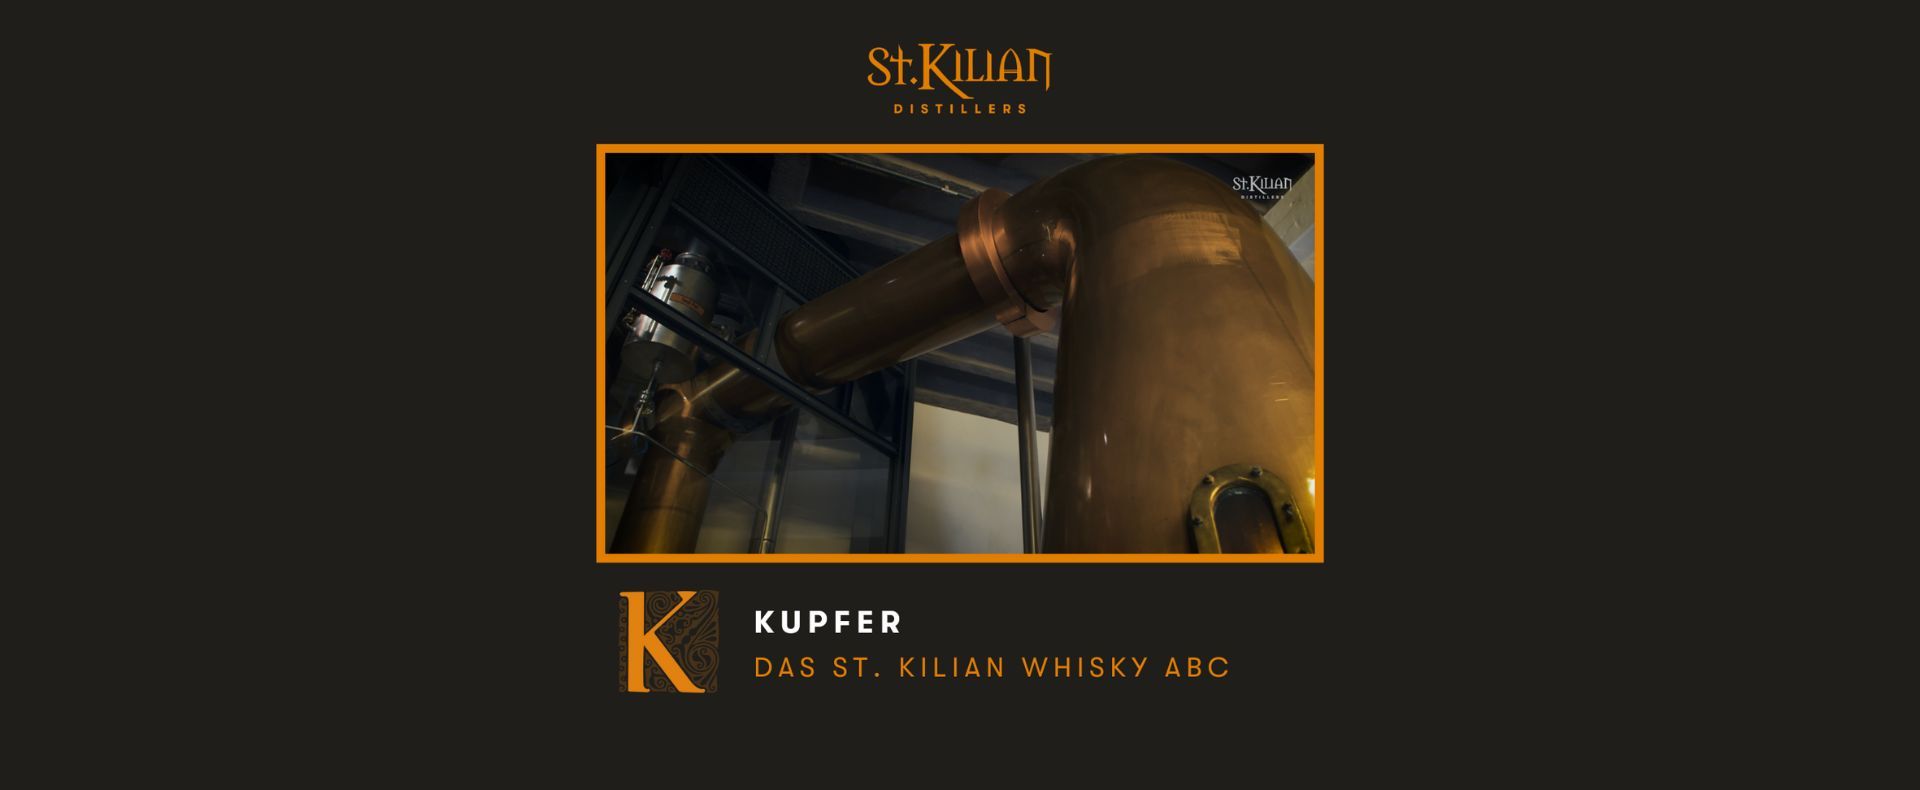 K wie Kupfer – St. Kilian Whisky ABC